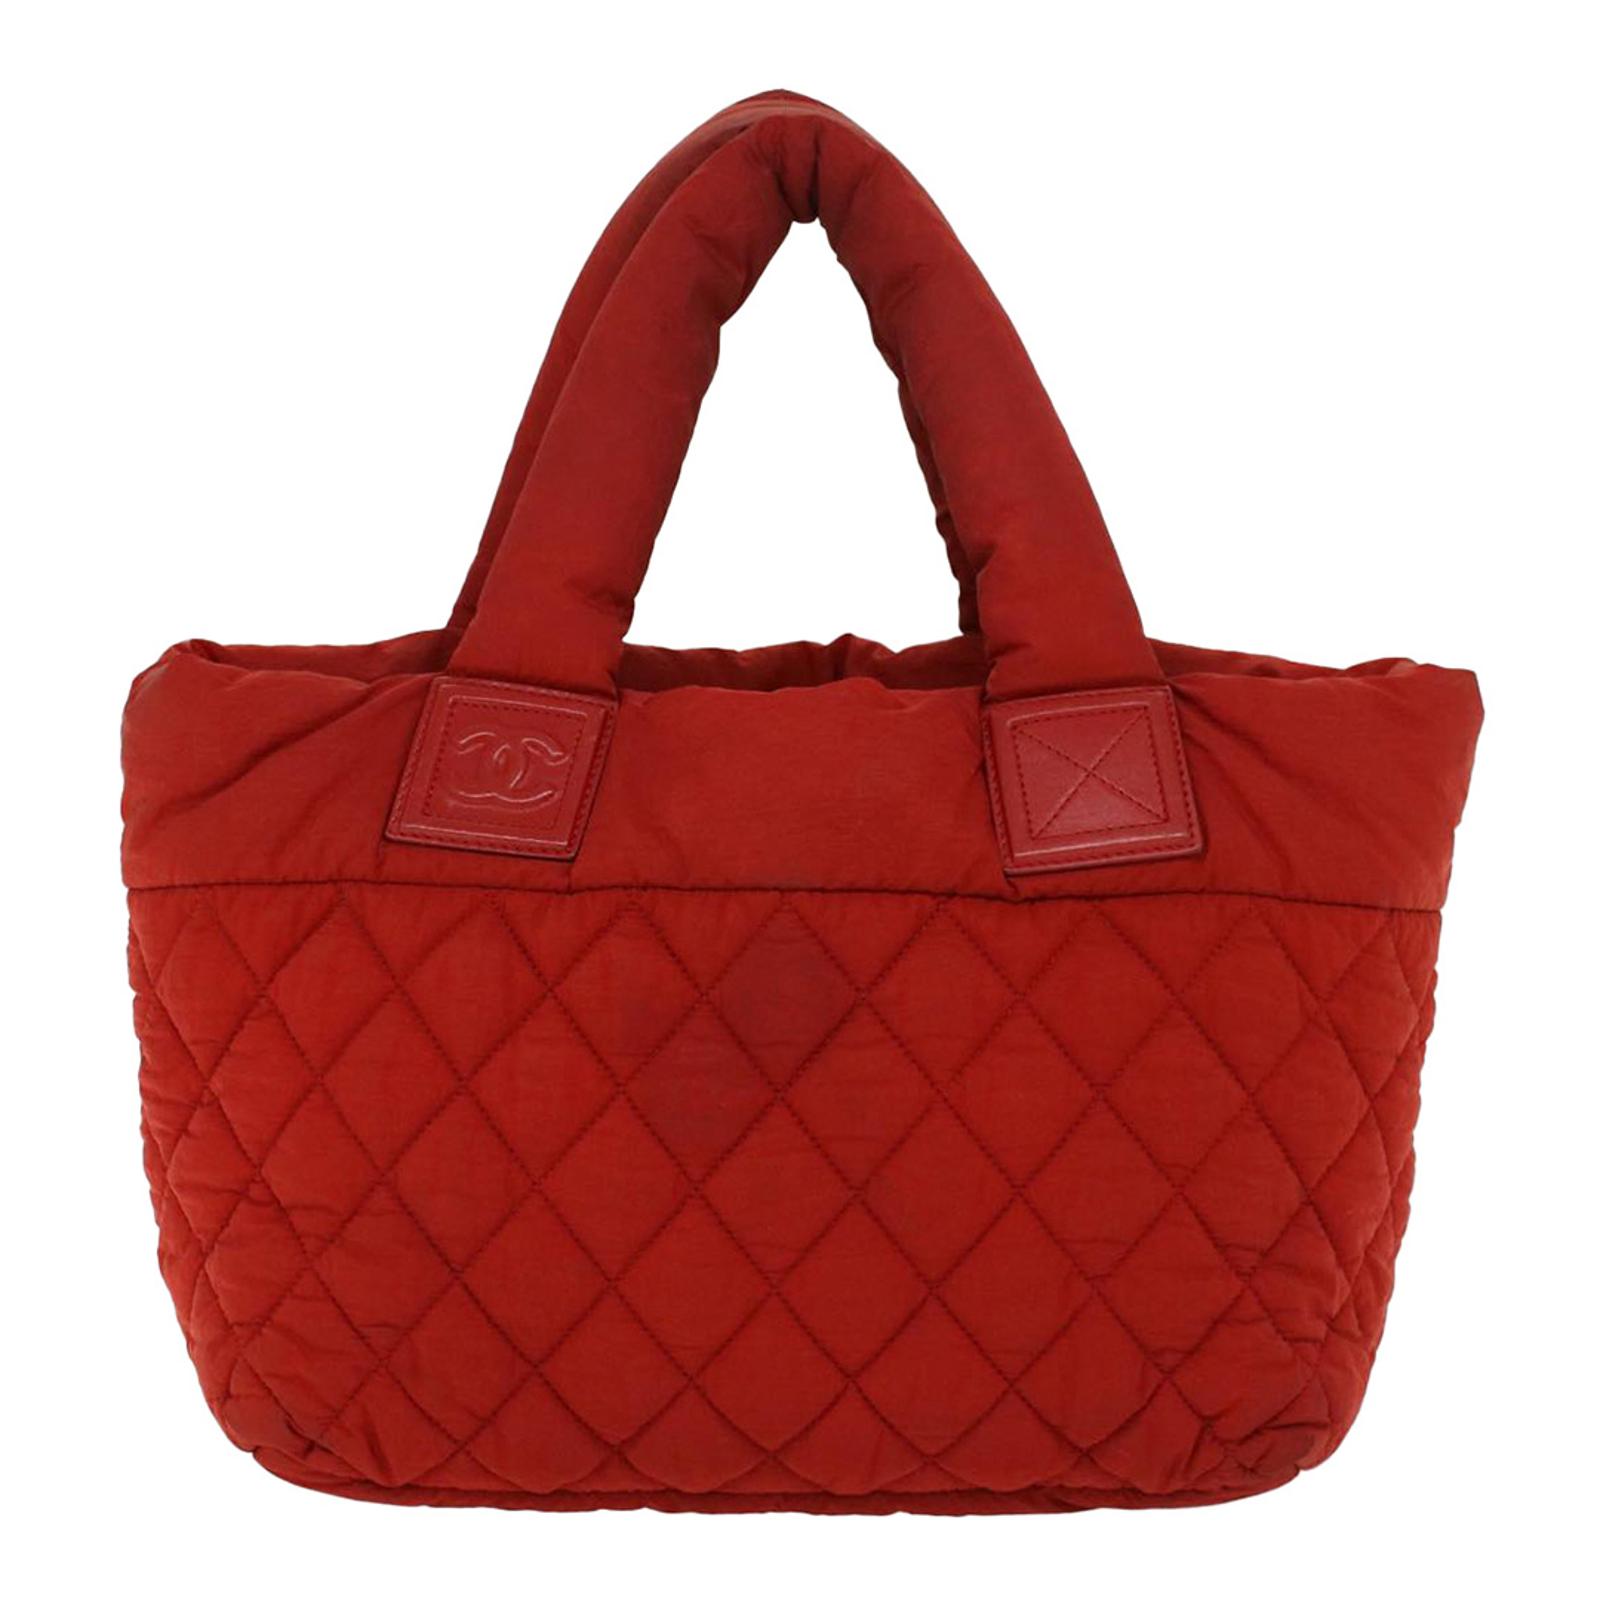 Red Chanel Handbag - BrandAlley